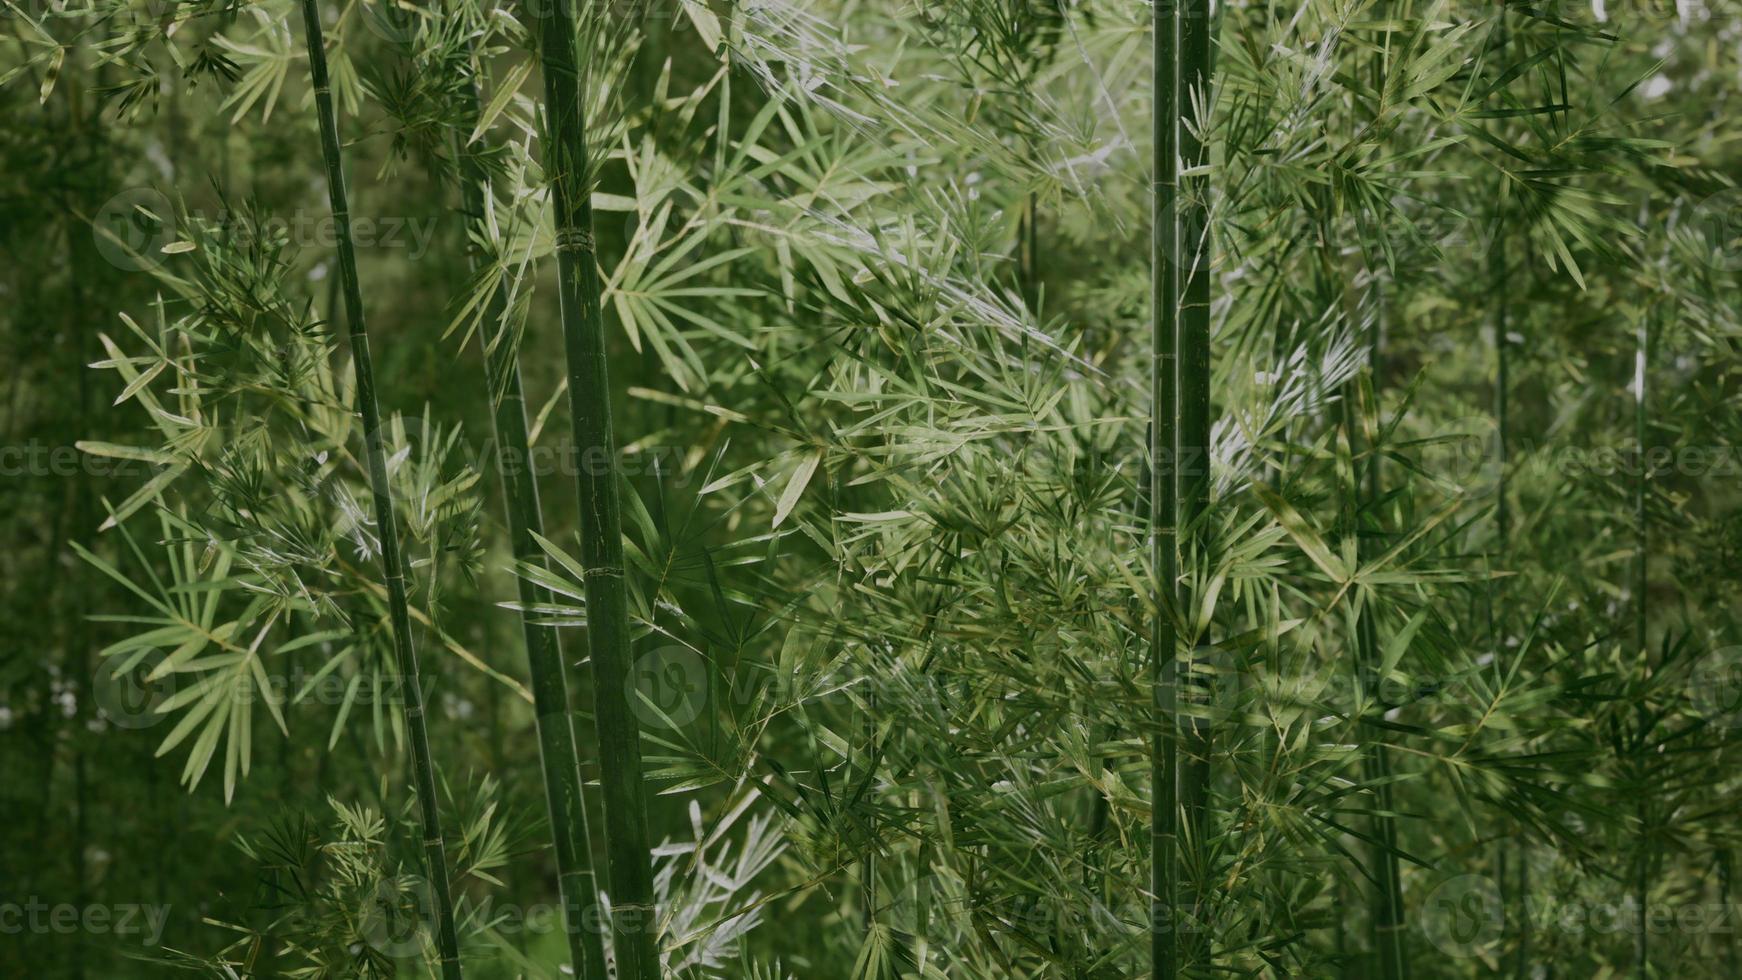 floresta verde de bambu em nevoeiro profundo foto